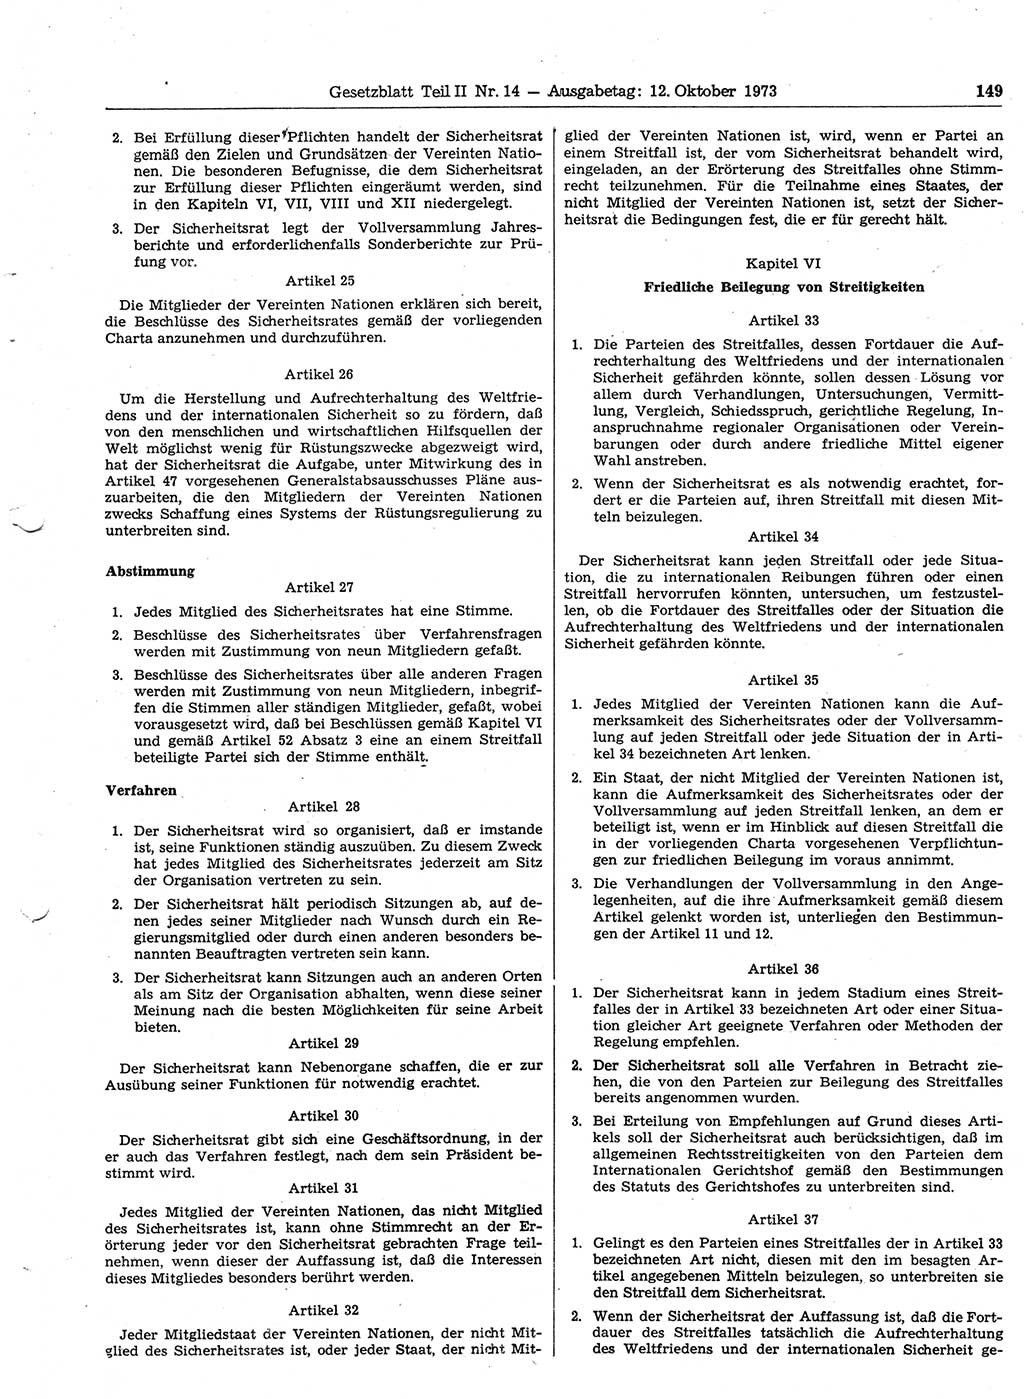 Gesetzblatt (GBl.) der Deutschen Demokratischen Republik (DDR) Teil ⅠⅠ 1973, Seite 149 (GBl. DDR ⅠⅠ 1973, S. 149)